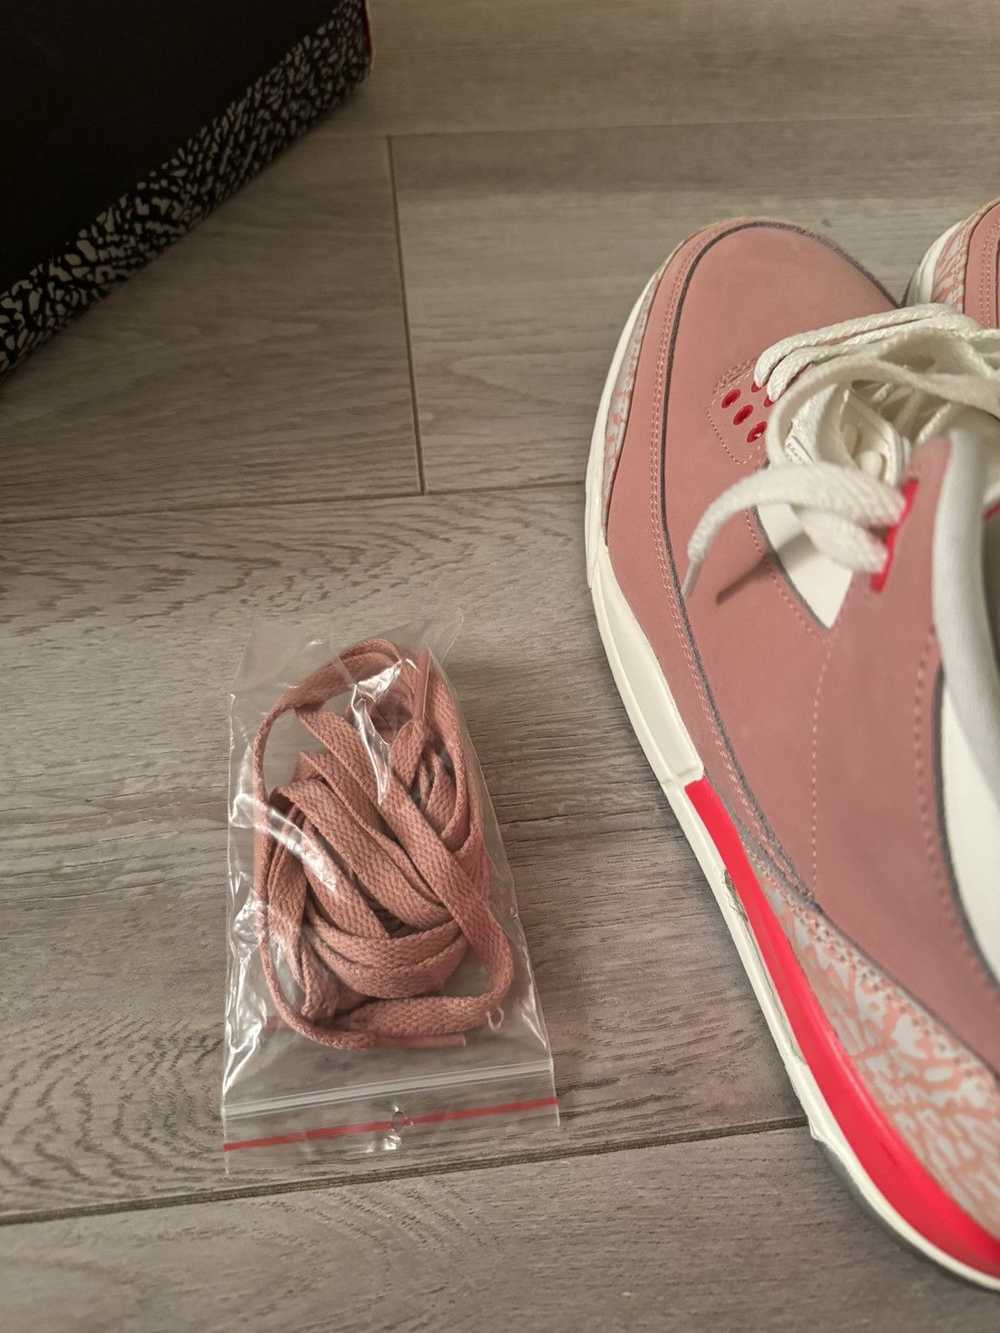 Jordan Brand × Nike Air Jordan 3 “Rust Pink” - image 8